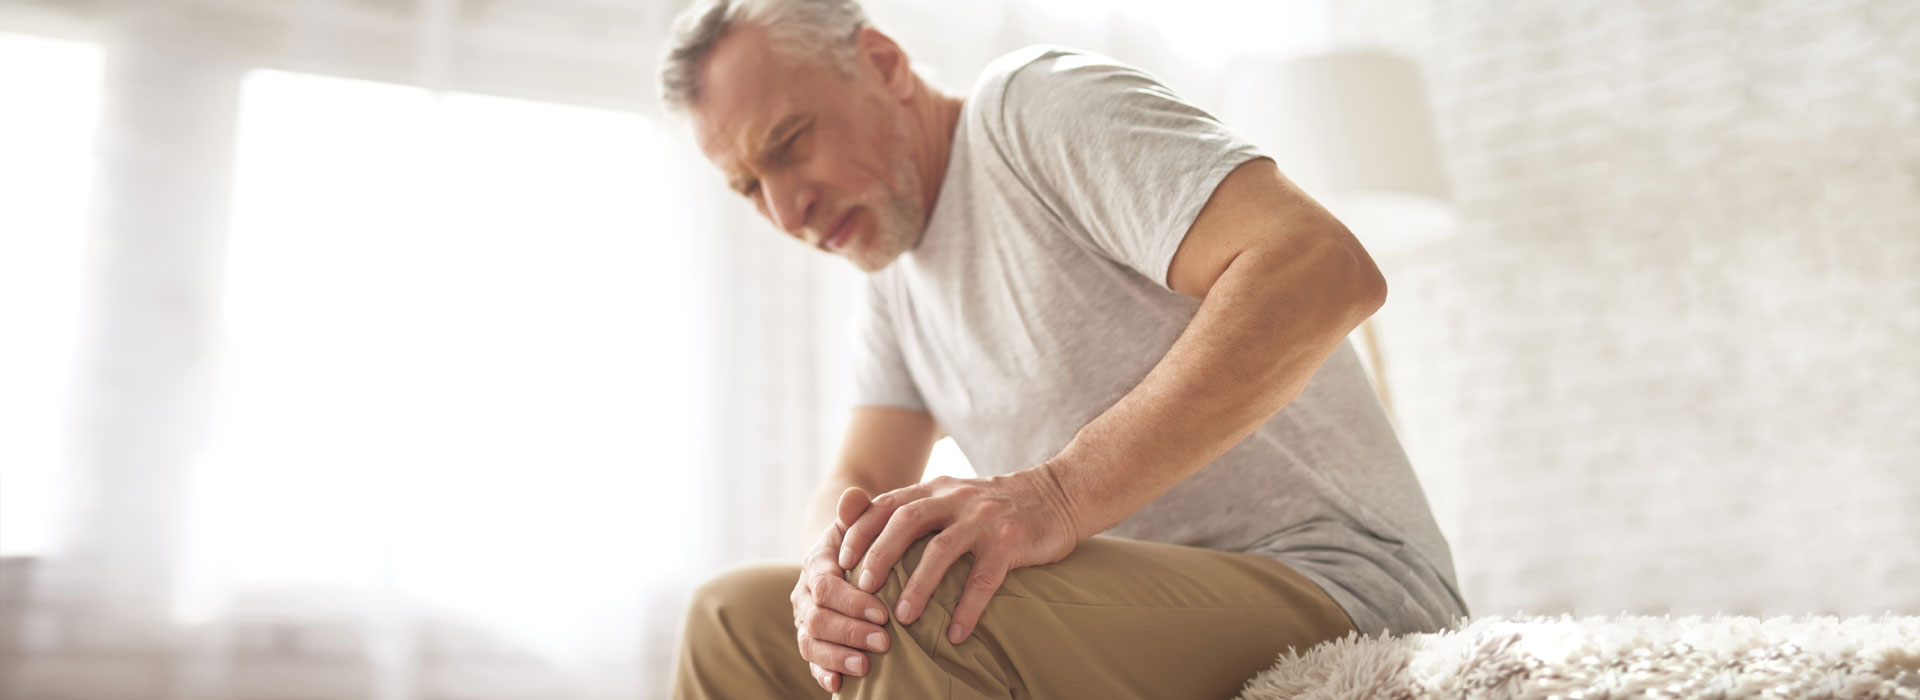 osteoarthritis ahol a kezelés megkezdődik